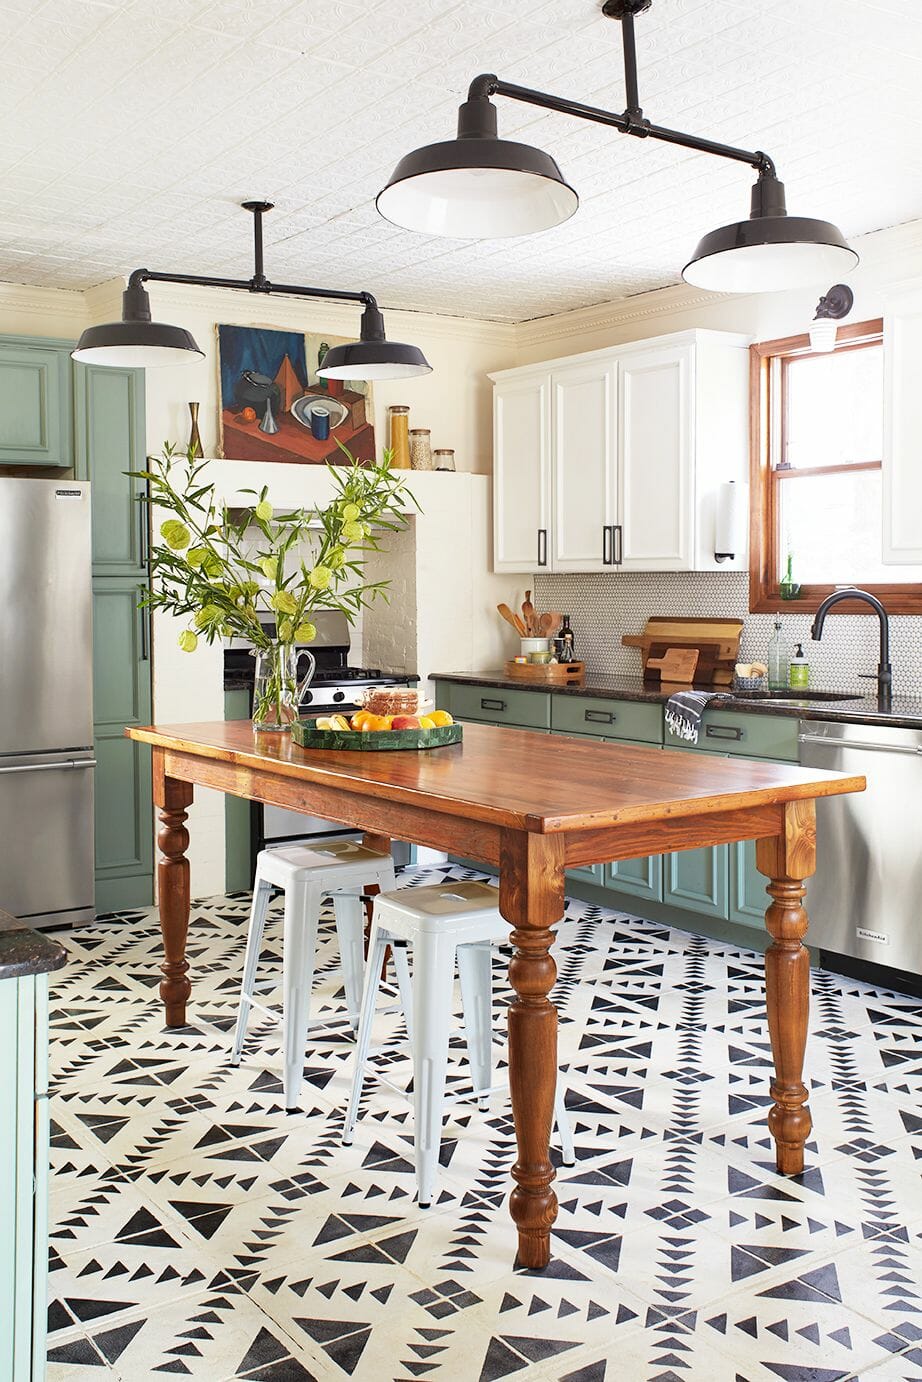 Hình ảnh phòng bếp hiện đại, thoáng sáng với cửa ra vào và hệ tủ sơn màu xanh xám bắt mắt